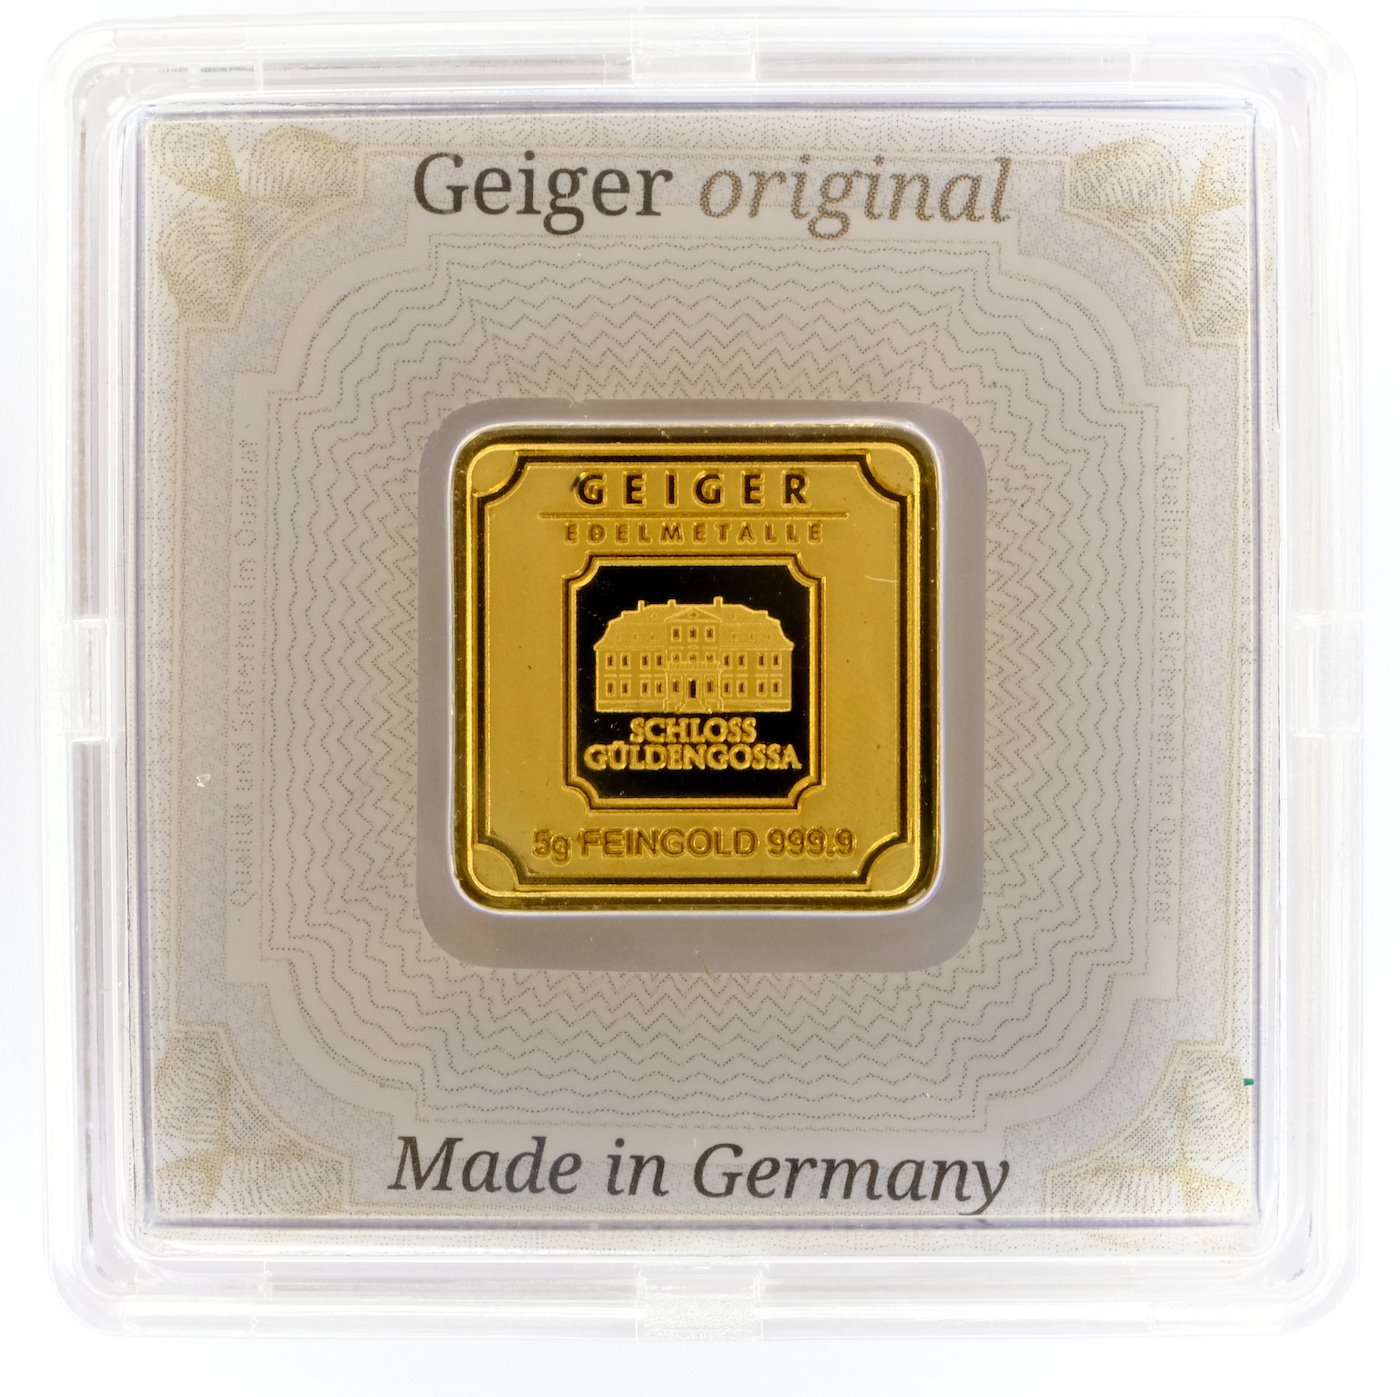 .. - Zlatý ražený ingot 5 g, zlato 999,9/1000, zámek Guldengossa od švýcarské společnosti Geiger,